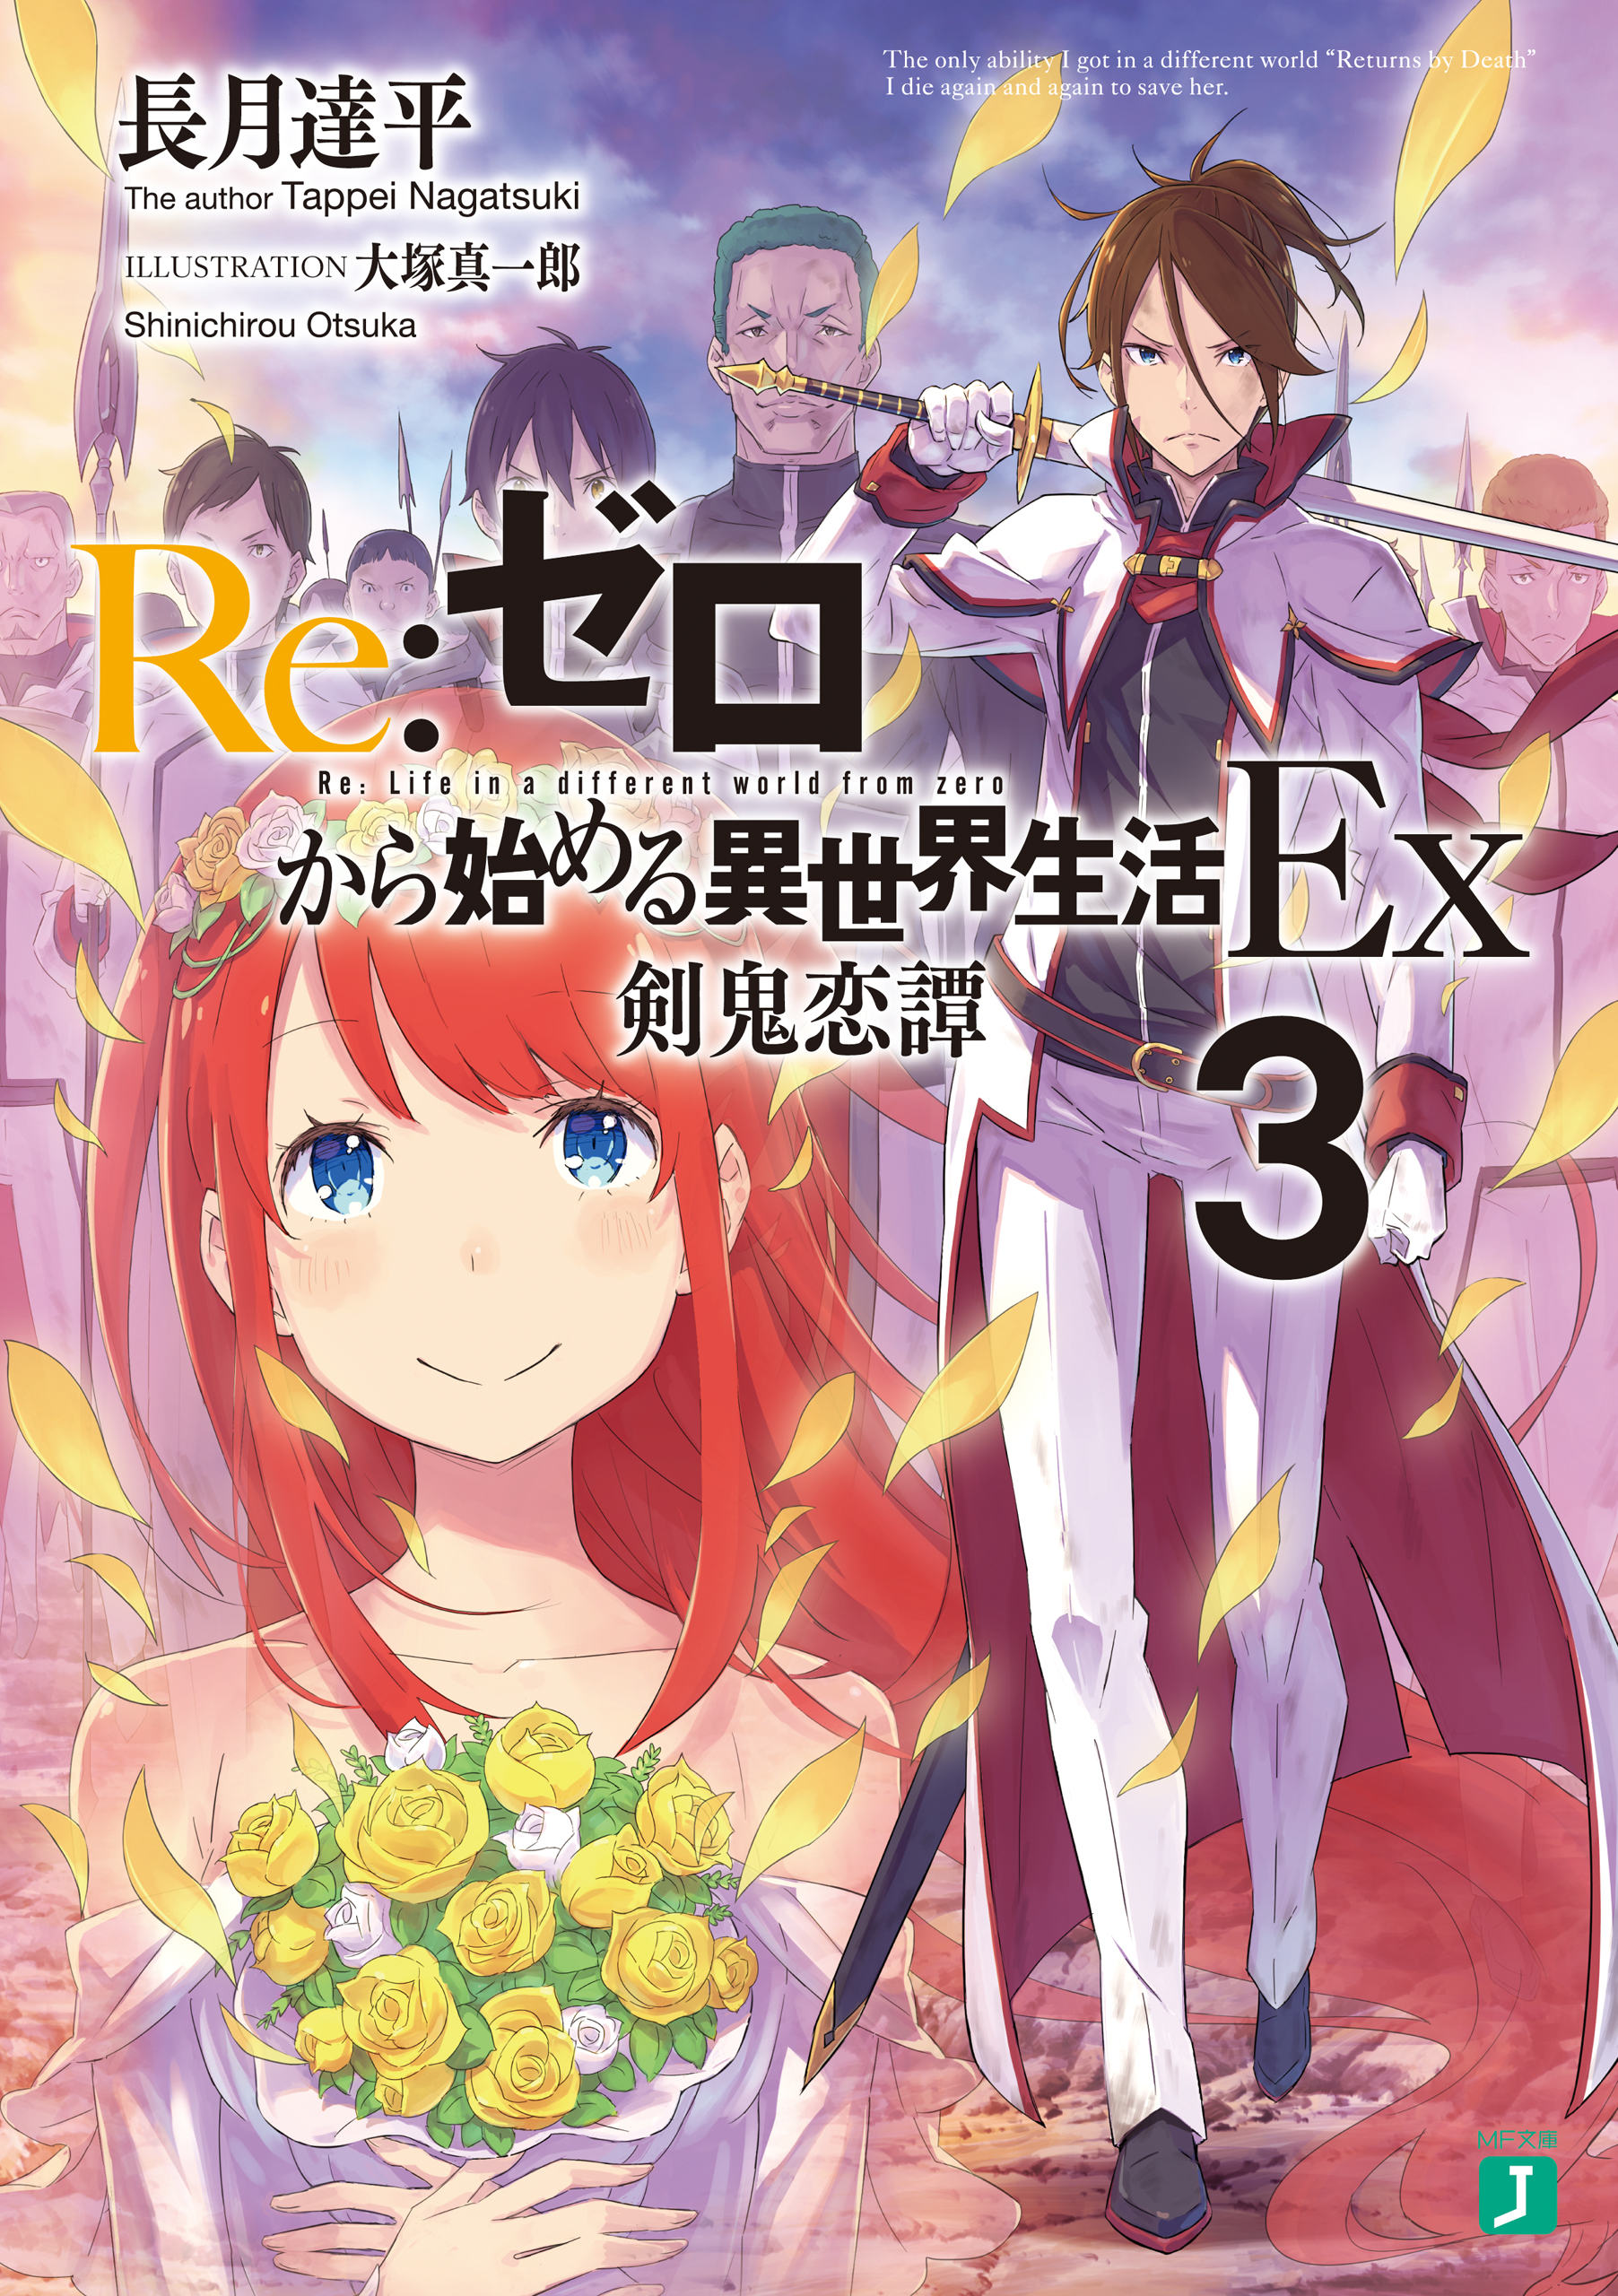 Re:Zero Ex Light Novel Volume 3, Re:Zero Wiki